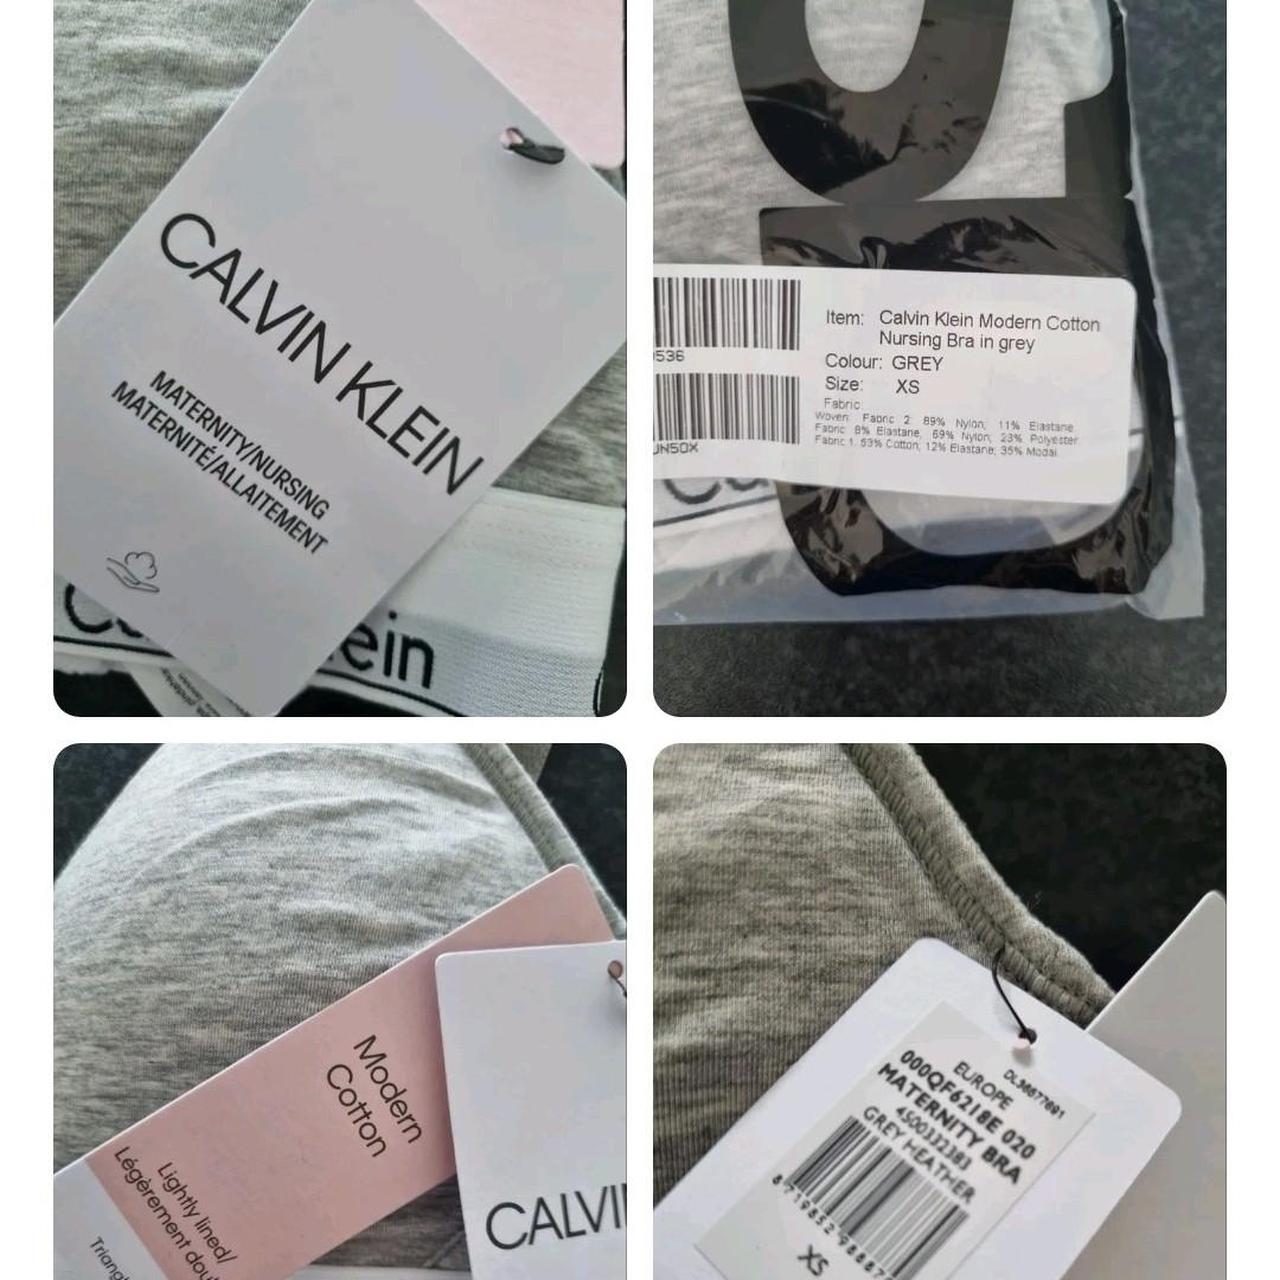 Calvin Klein Nursing Bra Grey- Size XS #calvinklein - Depop